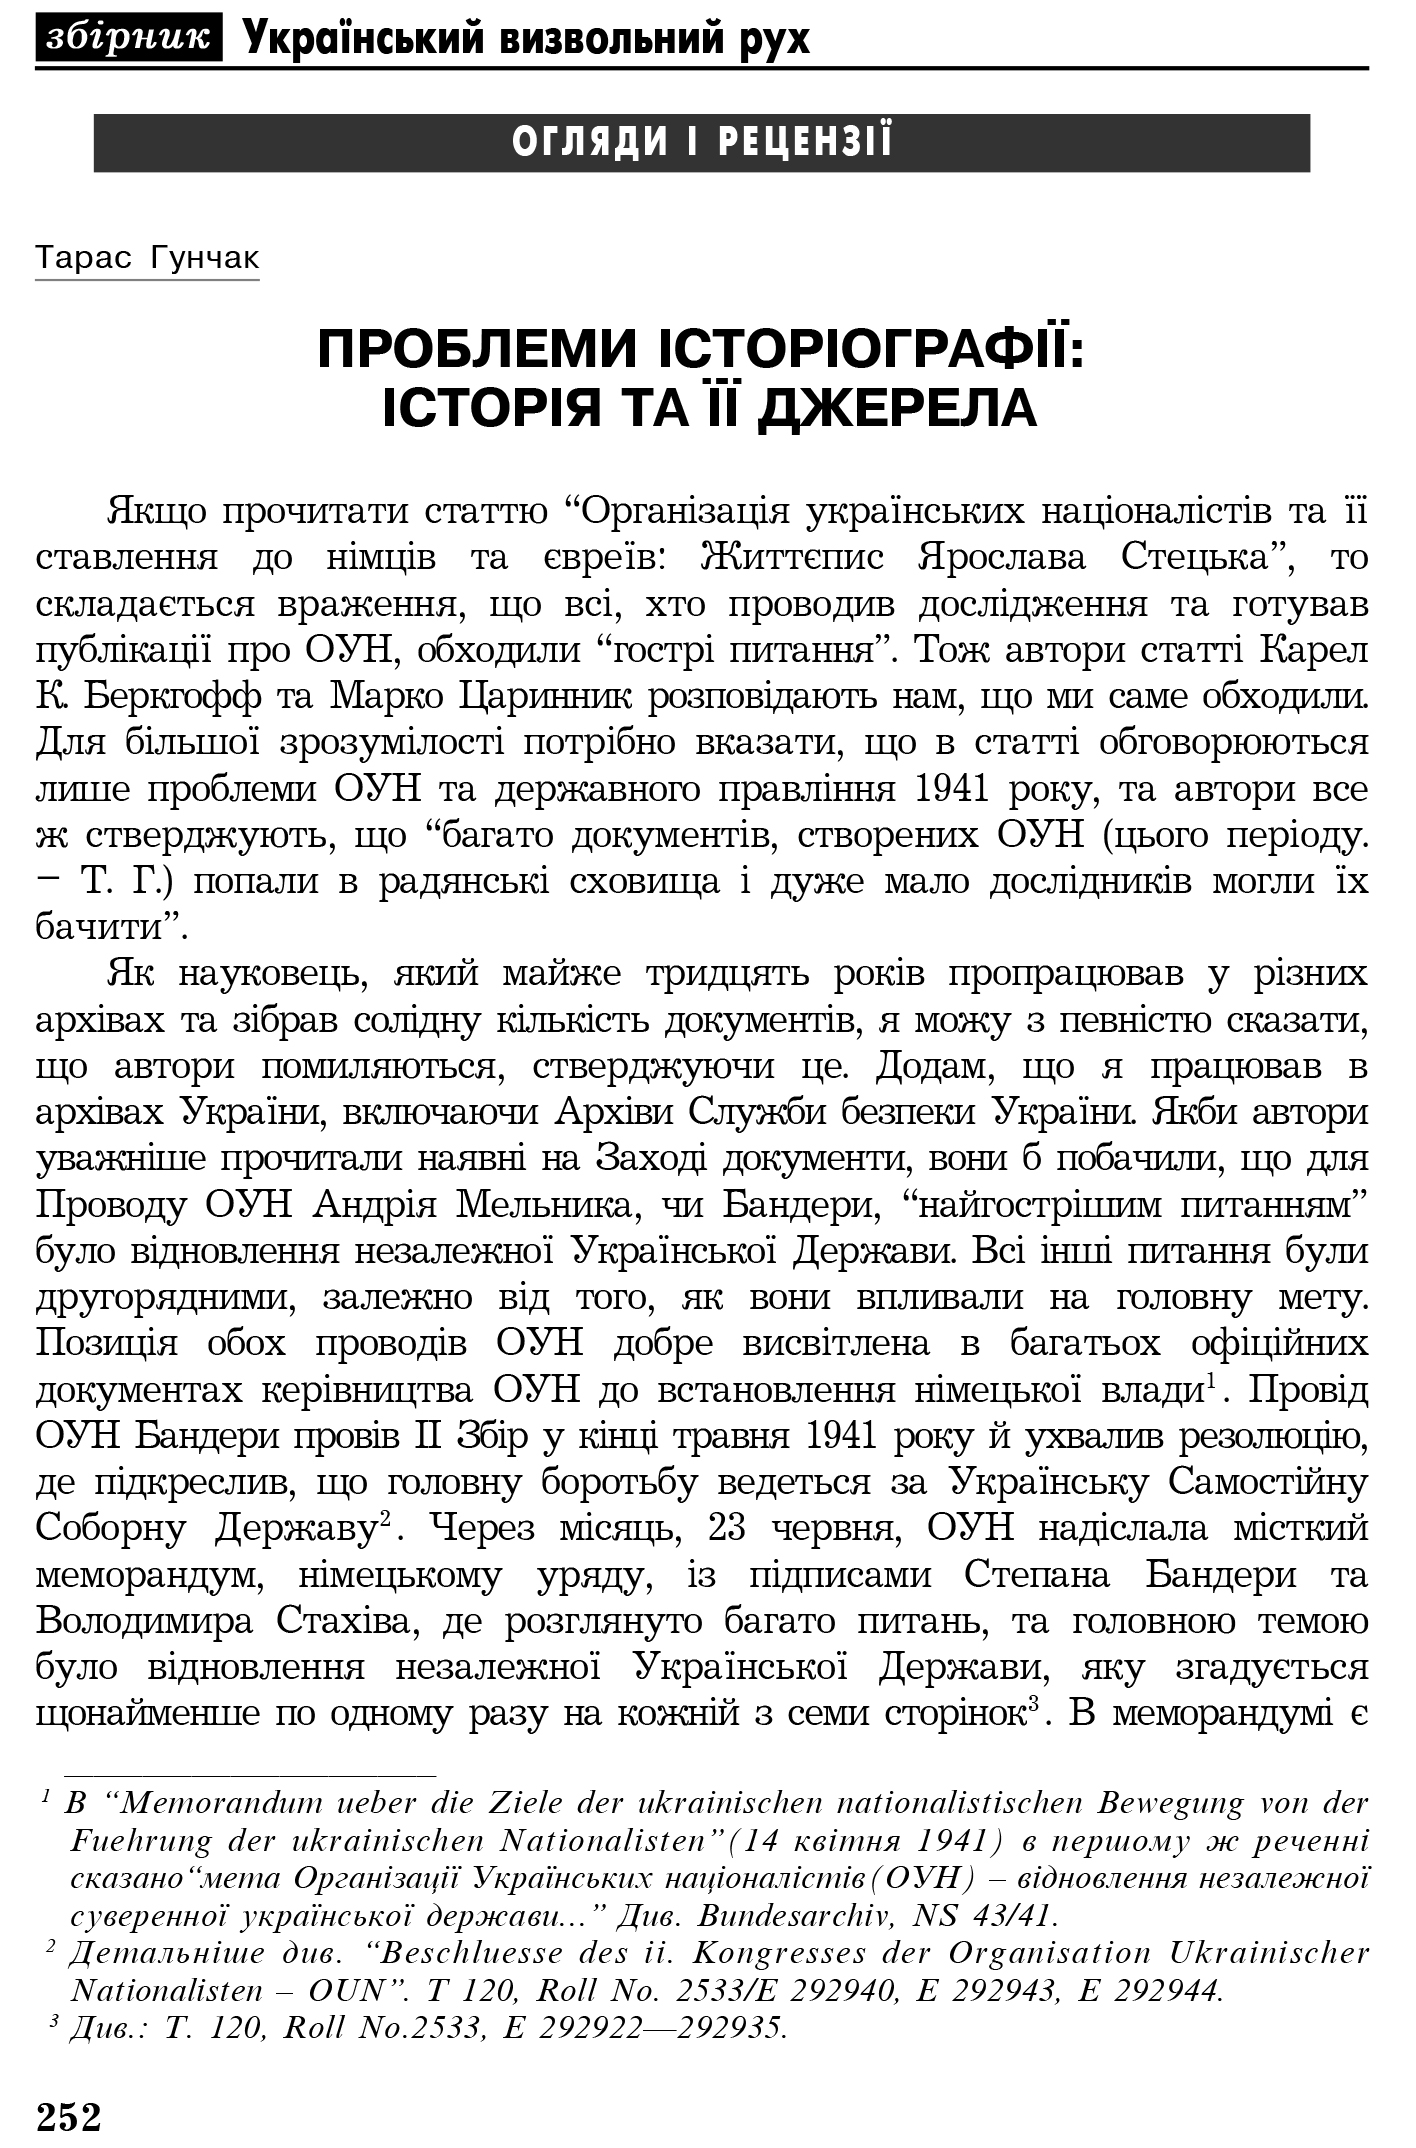 Український визвольний рух №4, ст. 252 - 262